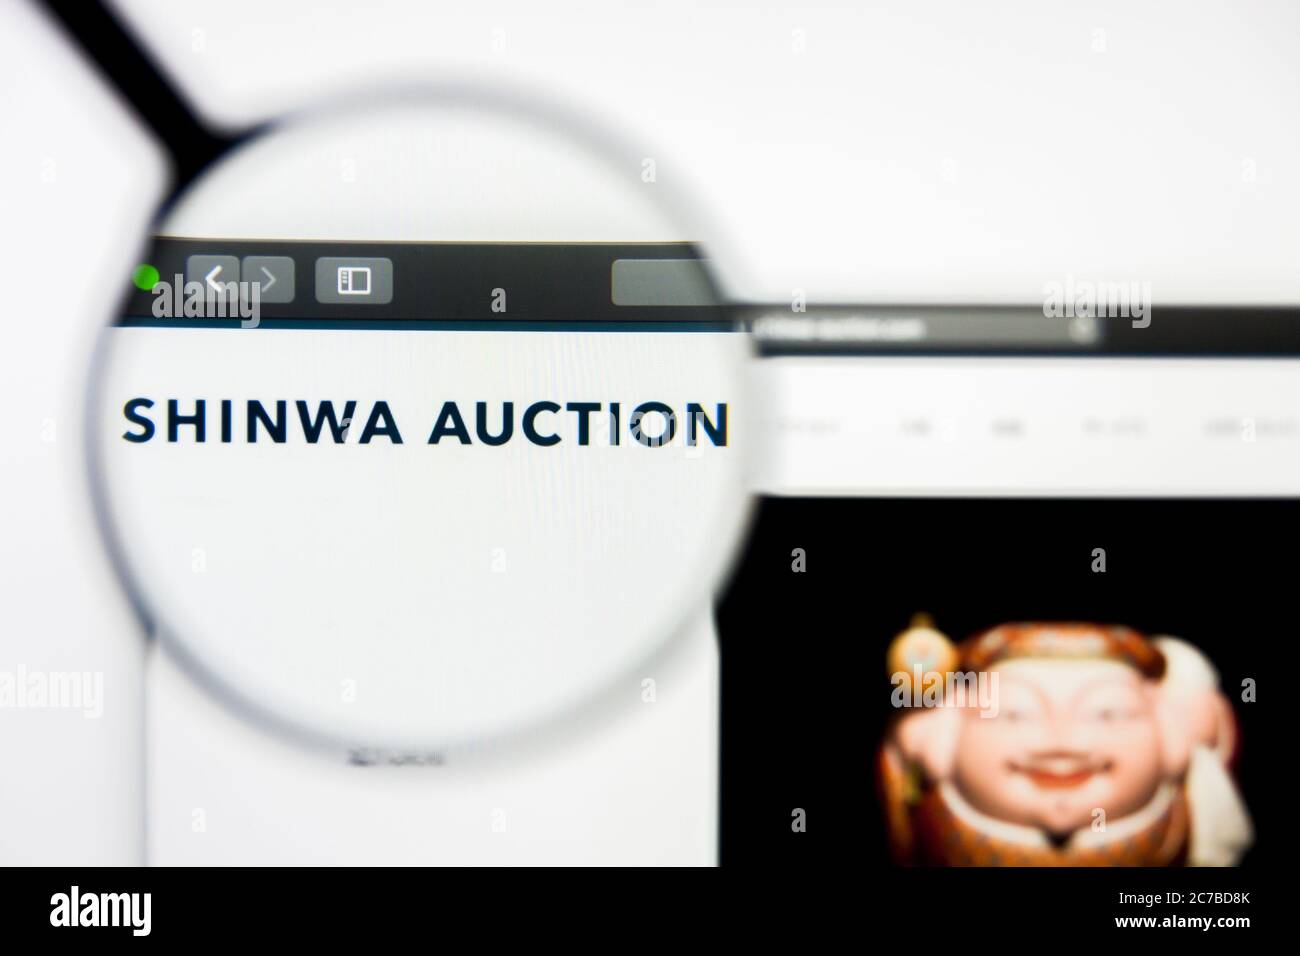 San Francisco, California, EE.UU. - 8 de abril de 2019: Editorial ilustrativa de la página web de la subasta de arte Shinwa. El logotipo de la Subasta de Arte Shinwa está visible Foto de stock